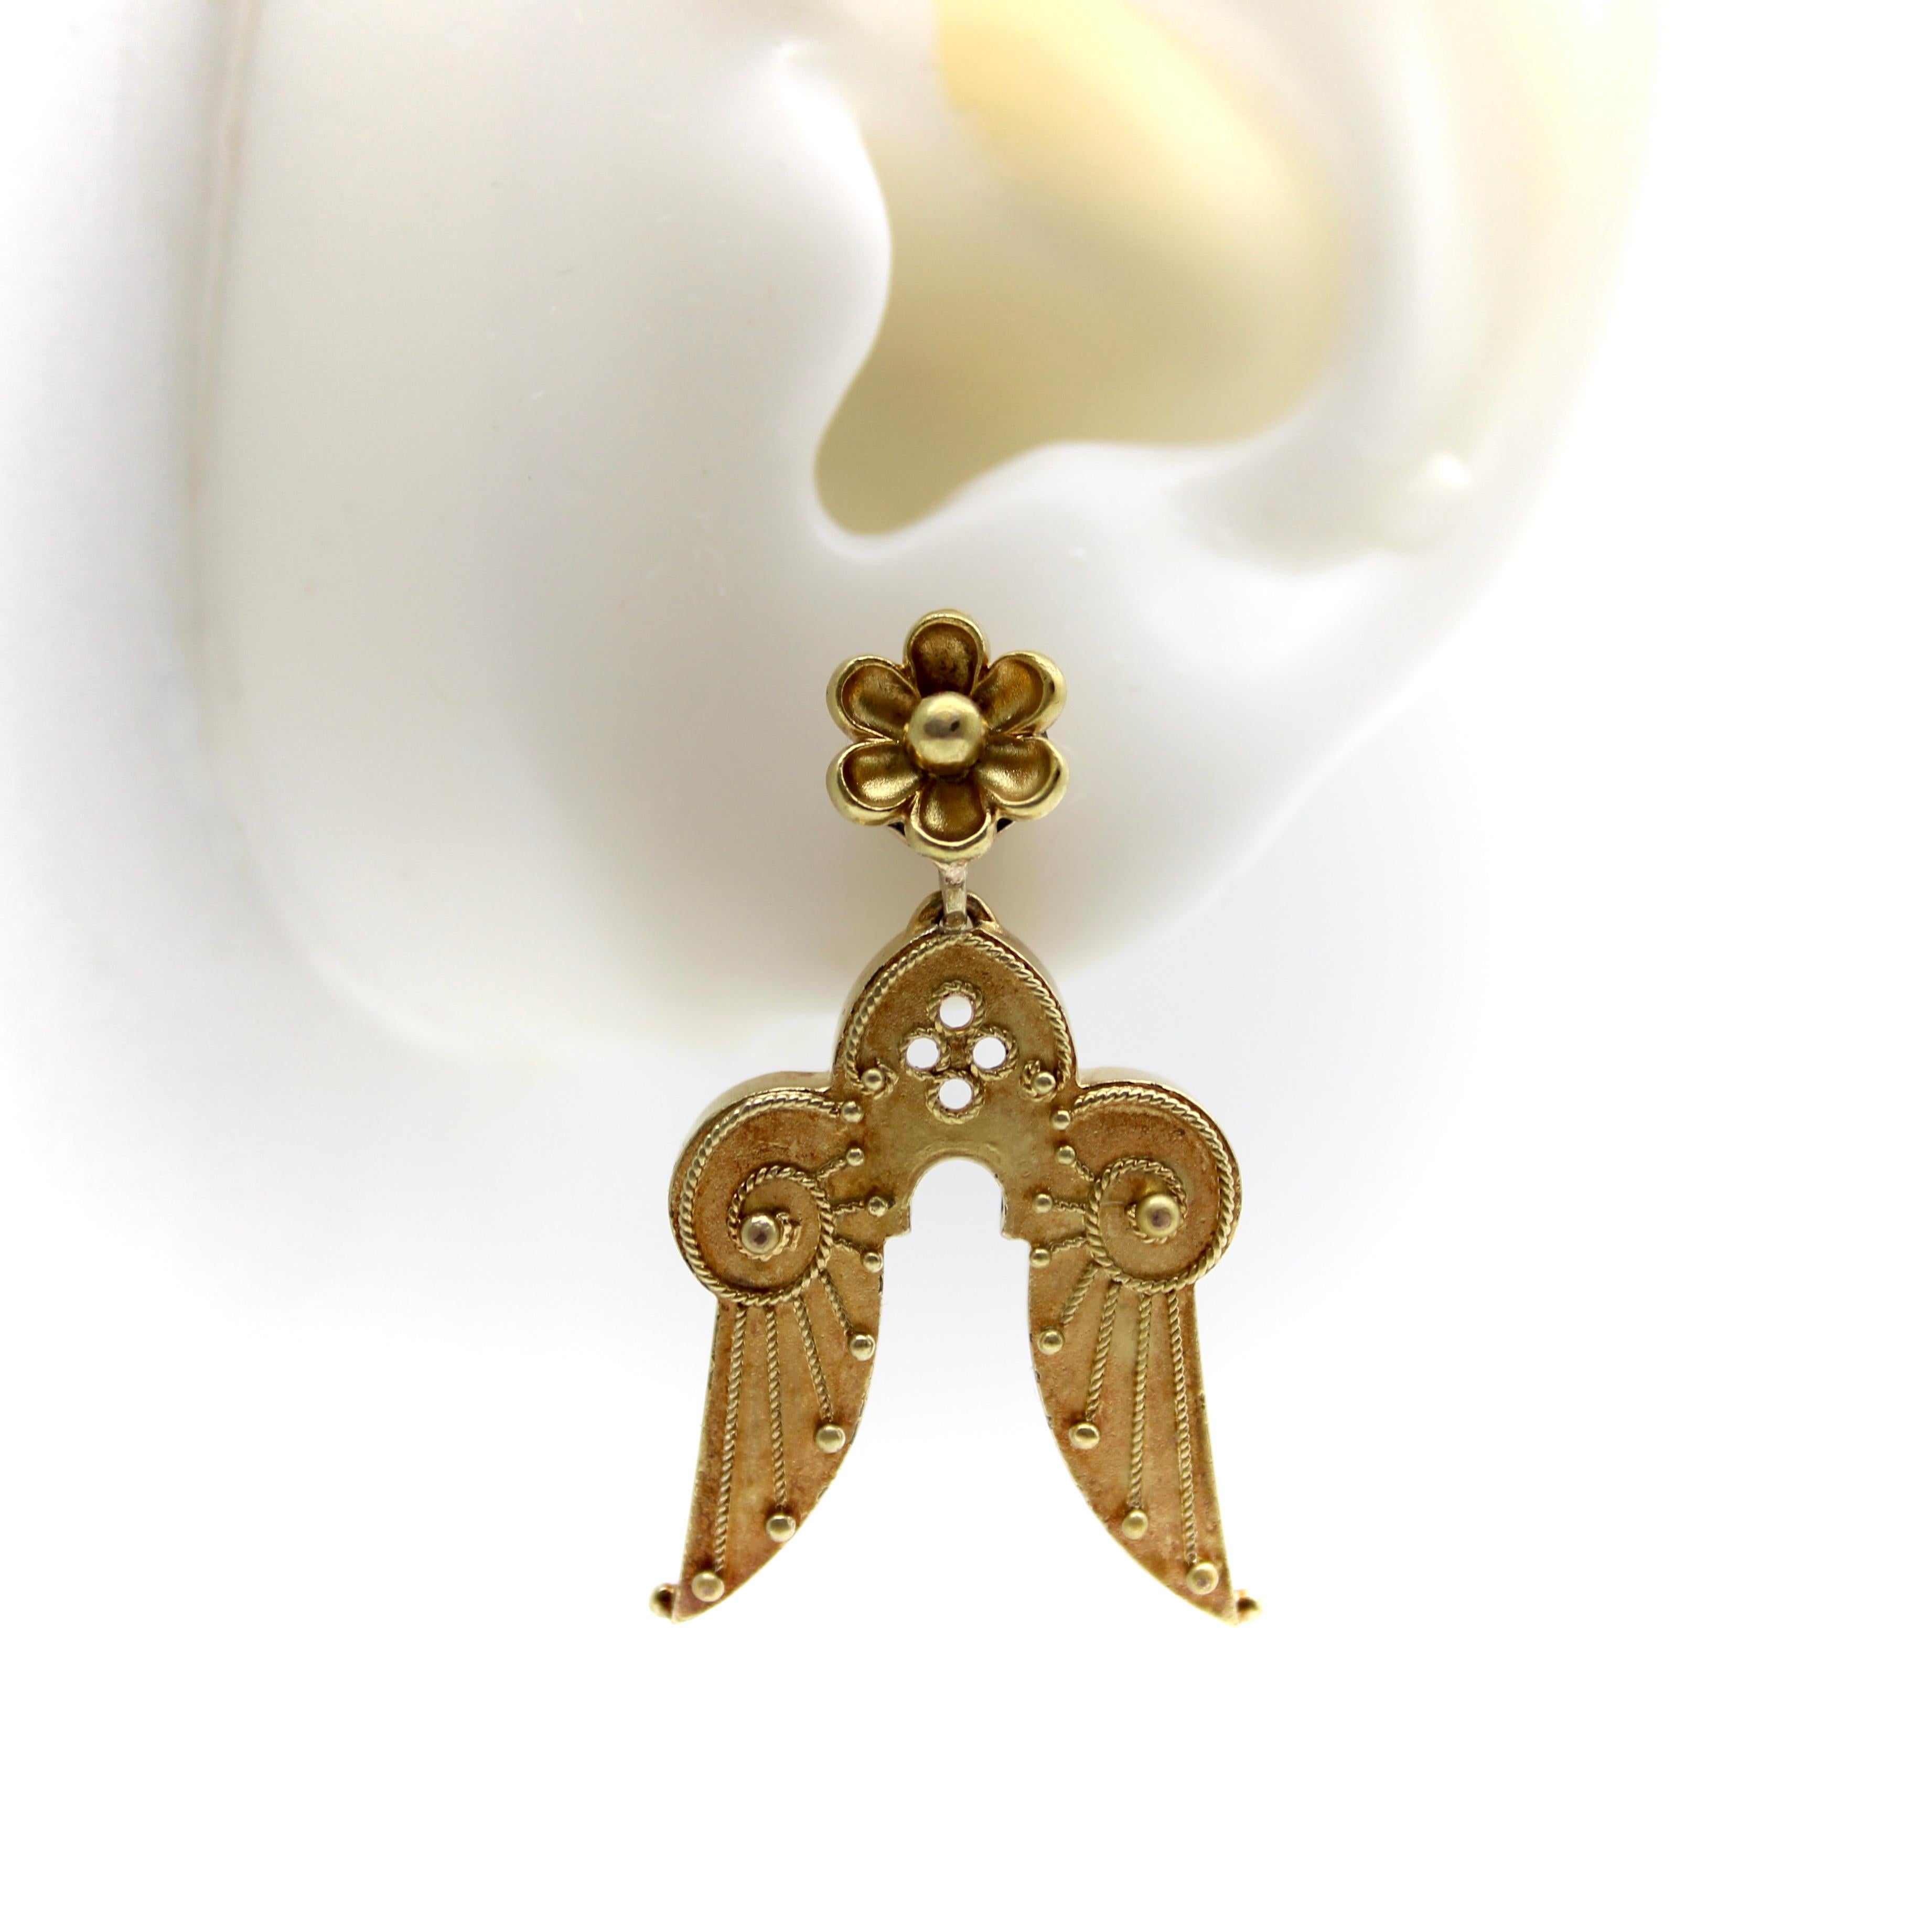 angel wing earrings gold